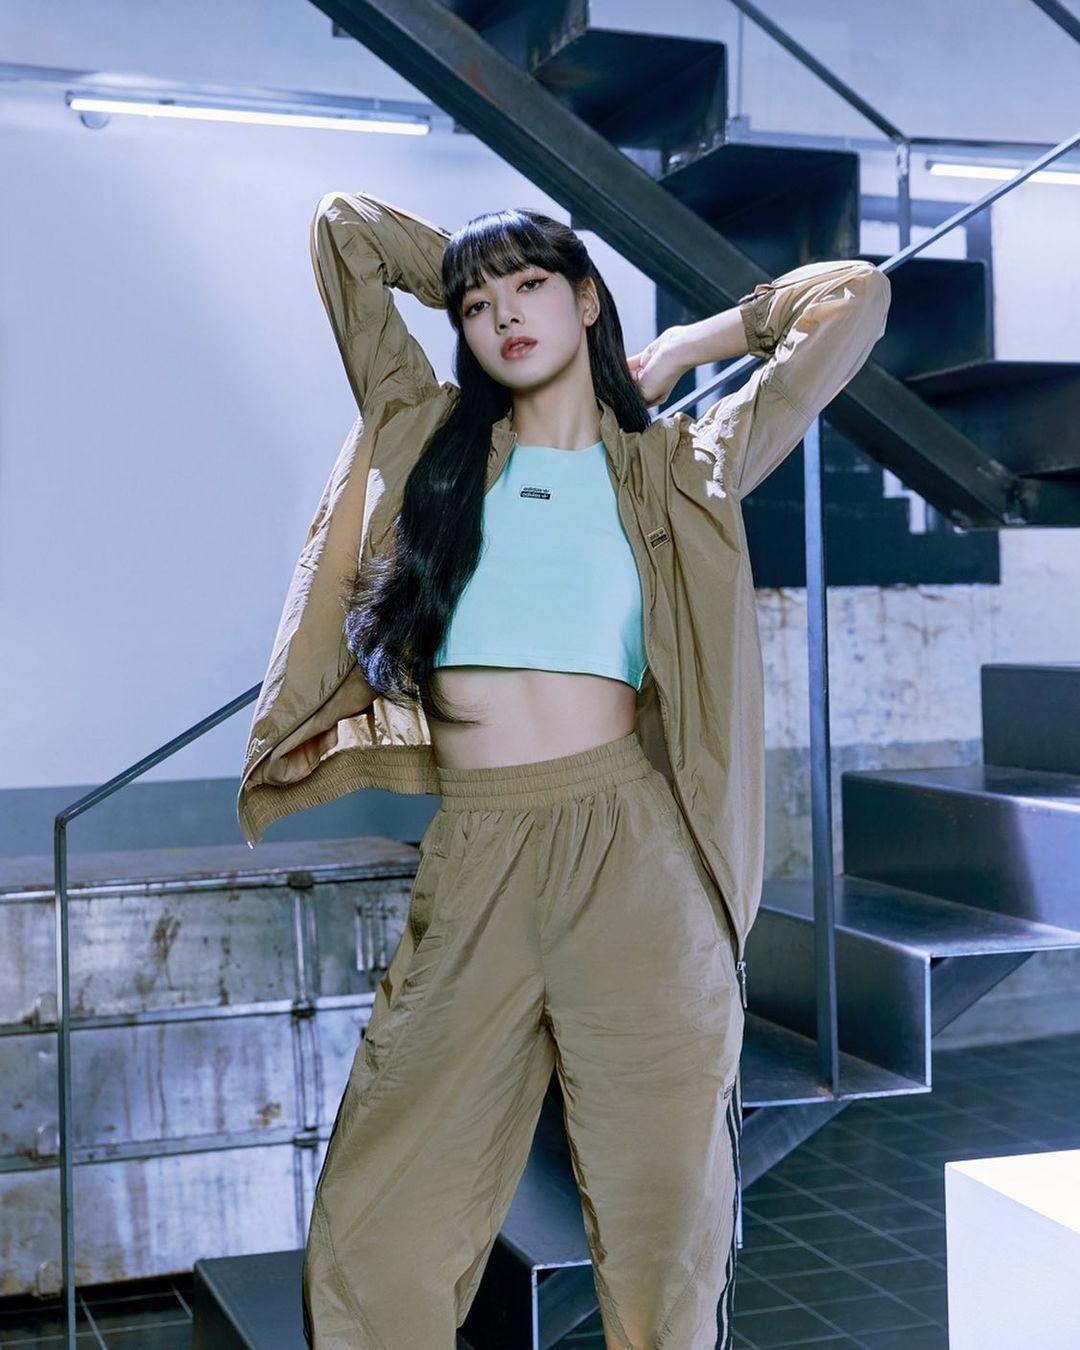 Lisa BlackPink là thành viên nổi bật của nhóm nhạc K-Pop đình đám BlackPink. Hình ảnh của cô luôn thu hút được sự chú ý của fan hâm mộ. Xem hình ảnh mới nhất về Lisa để cảm nhận vẻ đẹp và cá tính đặc trưng của cô nàng nhé!